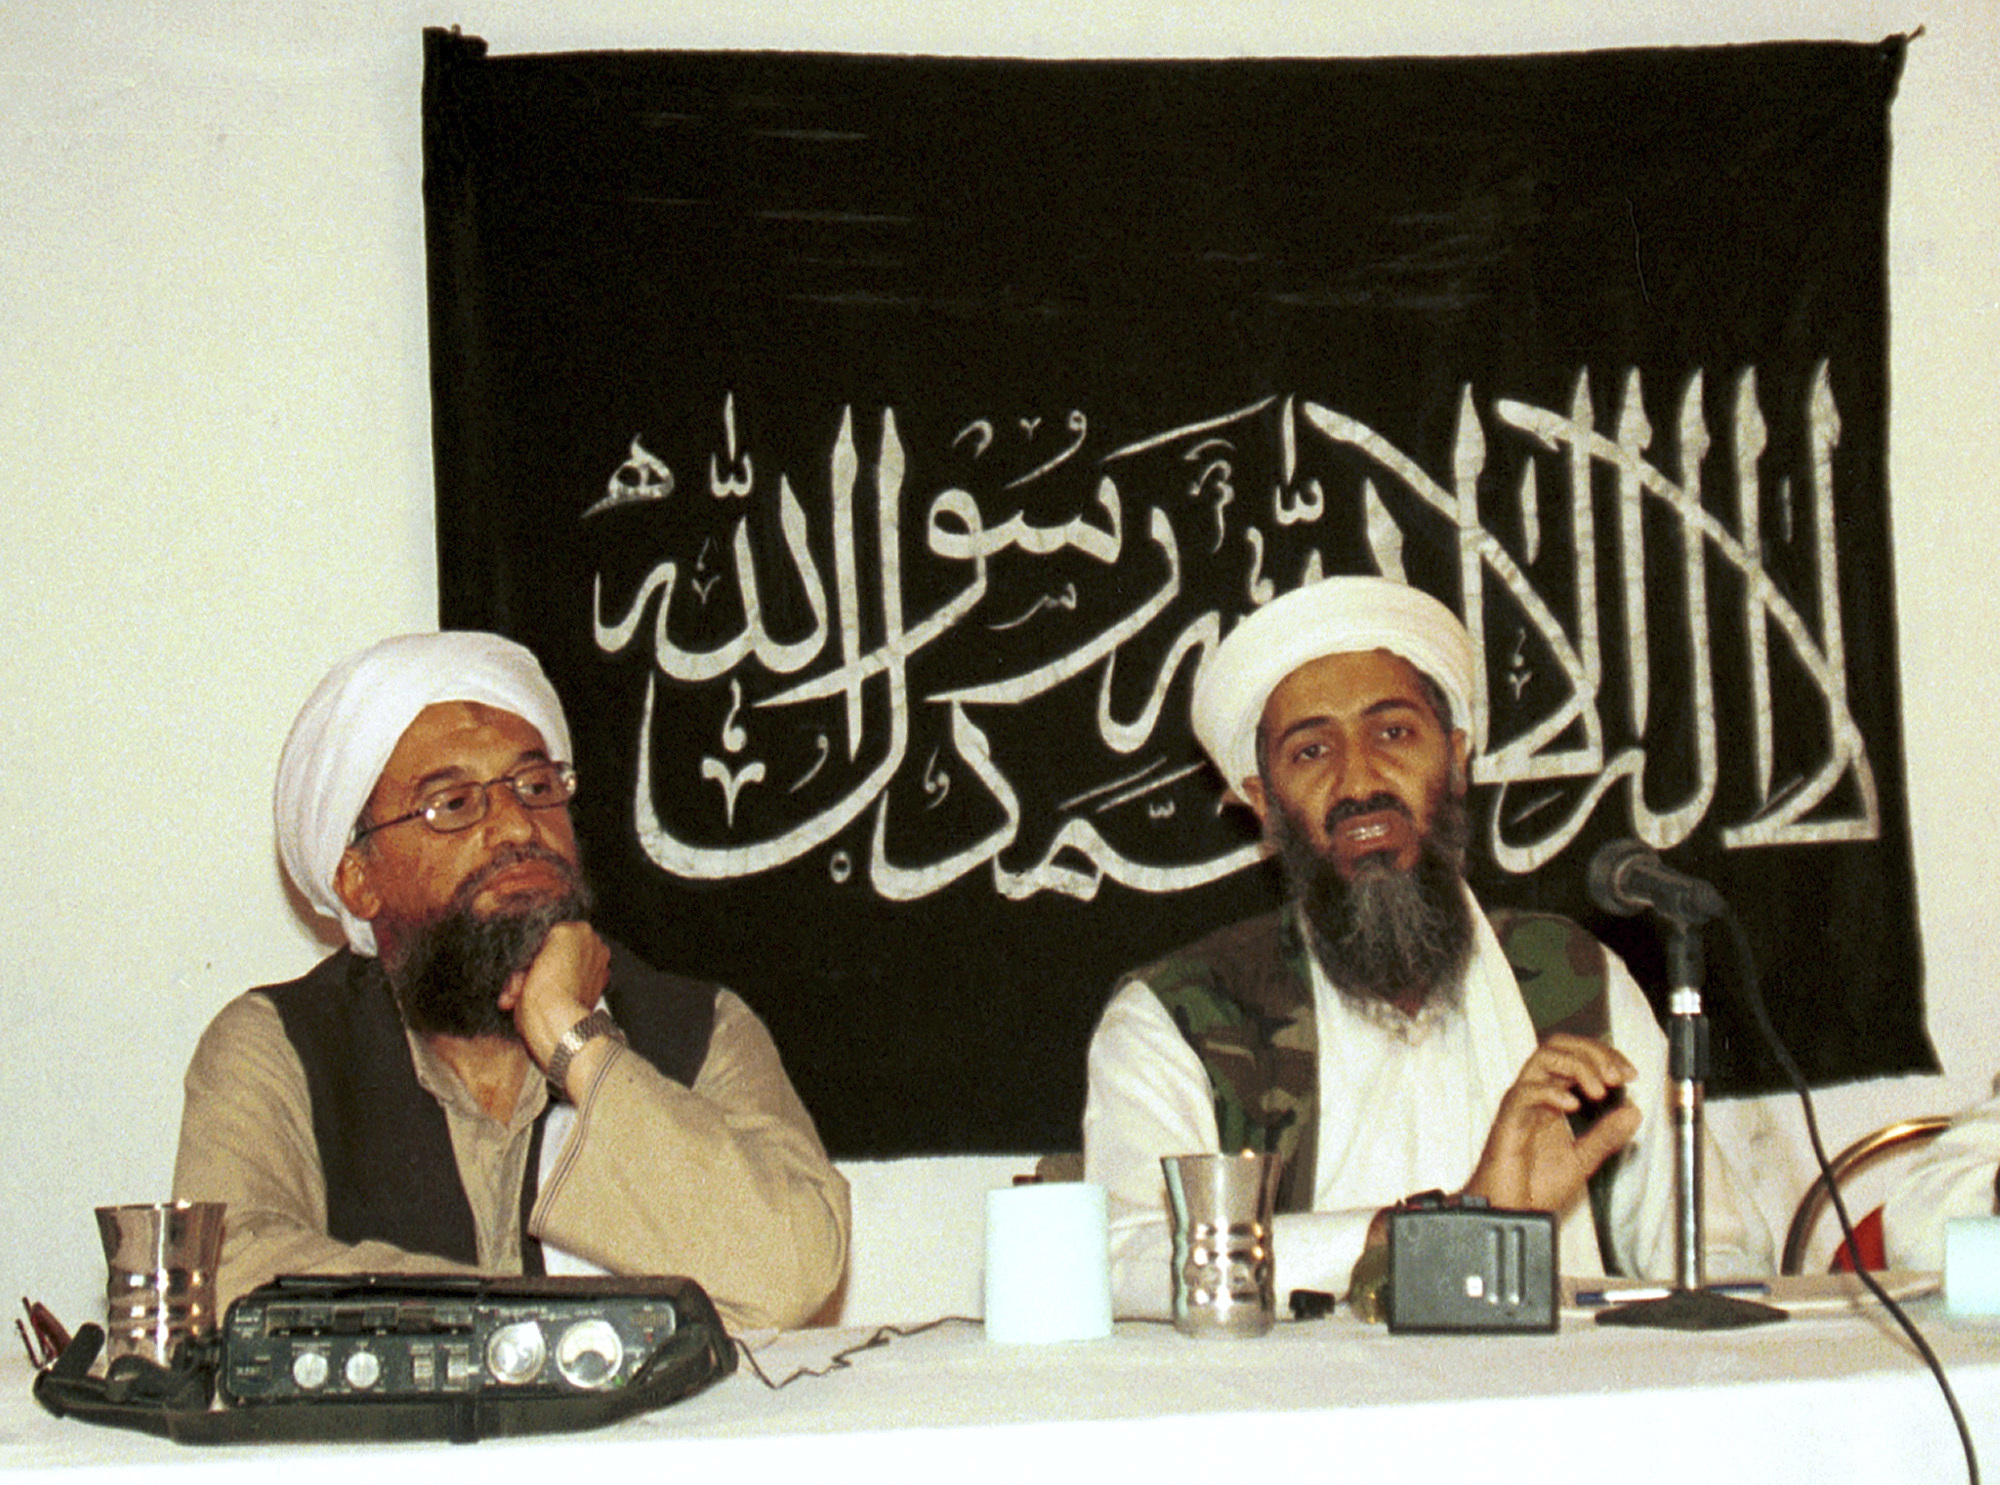 Ayman al-Zawahri sitting with Osama bin Laden in 1998.  